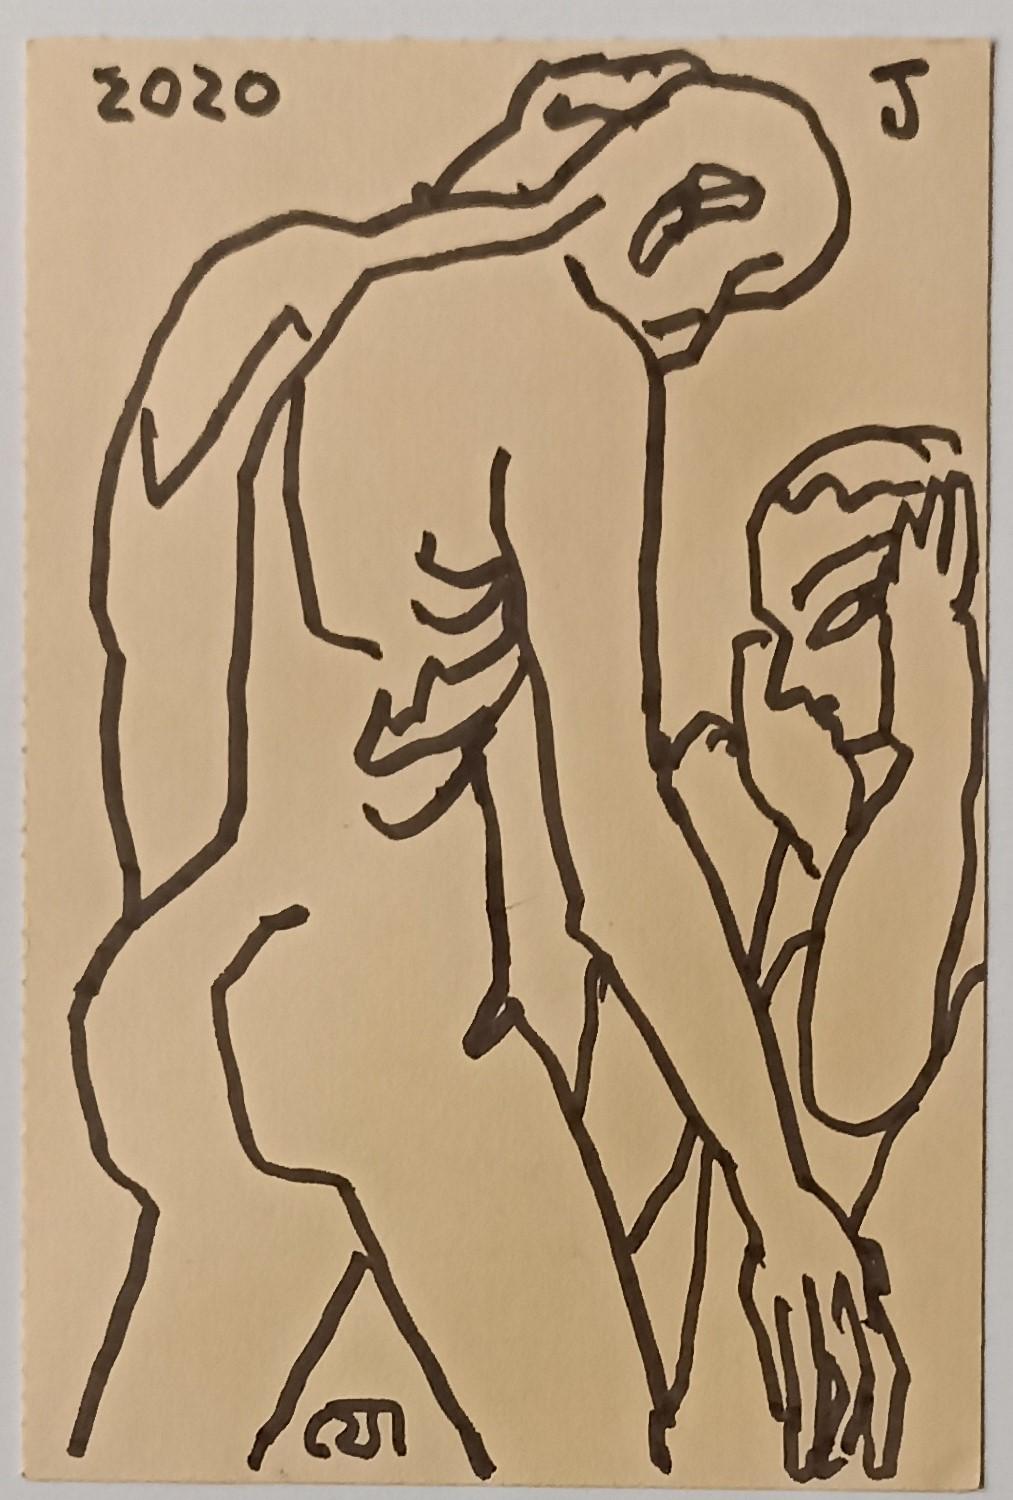 Jogen Chowdhury
Sans titre, encre sur papier
 6 x 4 pouces , 2020
 ( encadré et livré )

Style : Il a énormément contribué à inspirer les jeunes artistes indiens. Jogen Chowdhury avait développé son style individuel après son retour de Paris. Ses